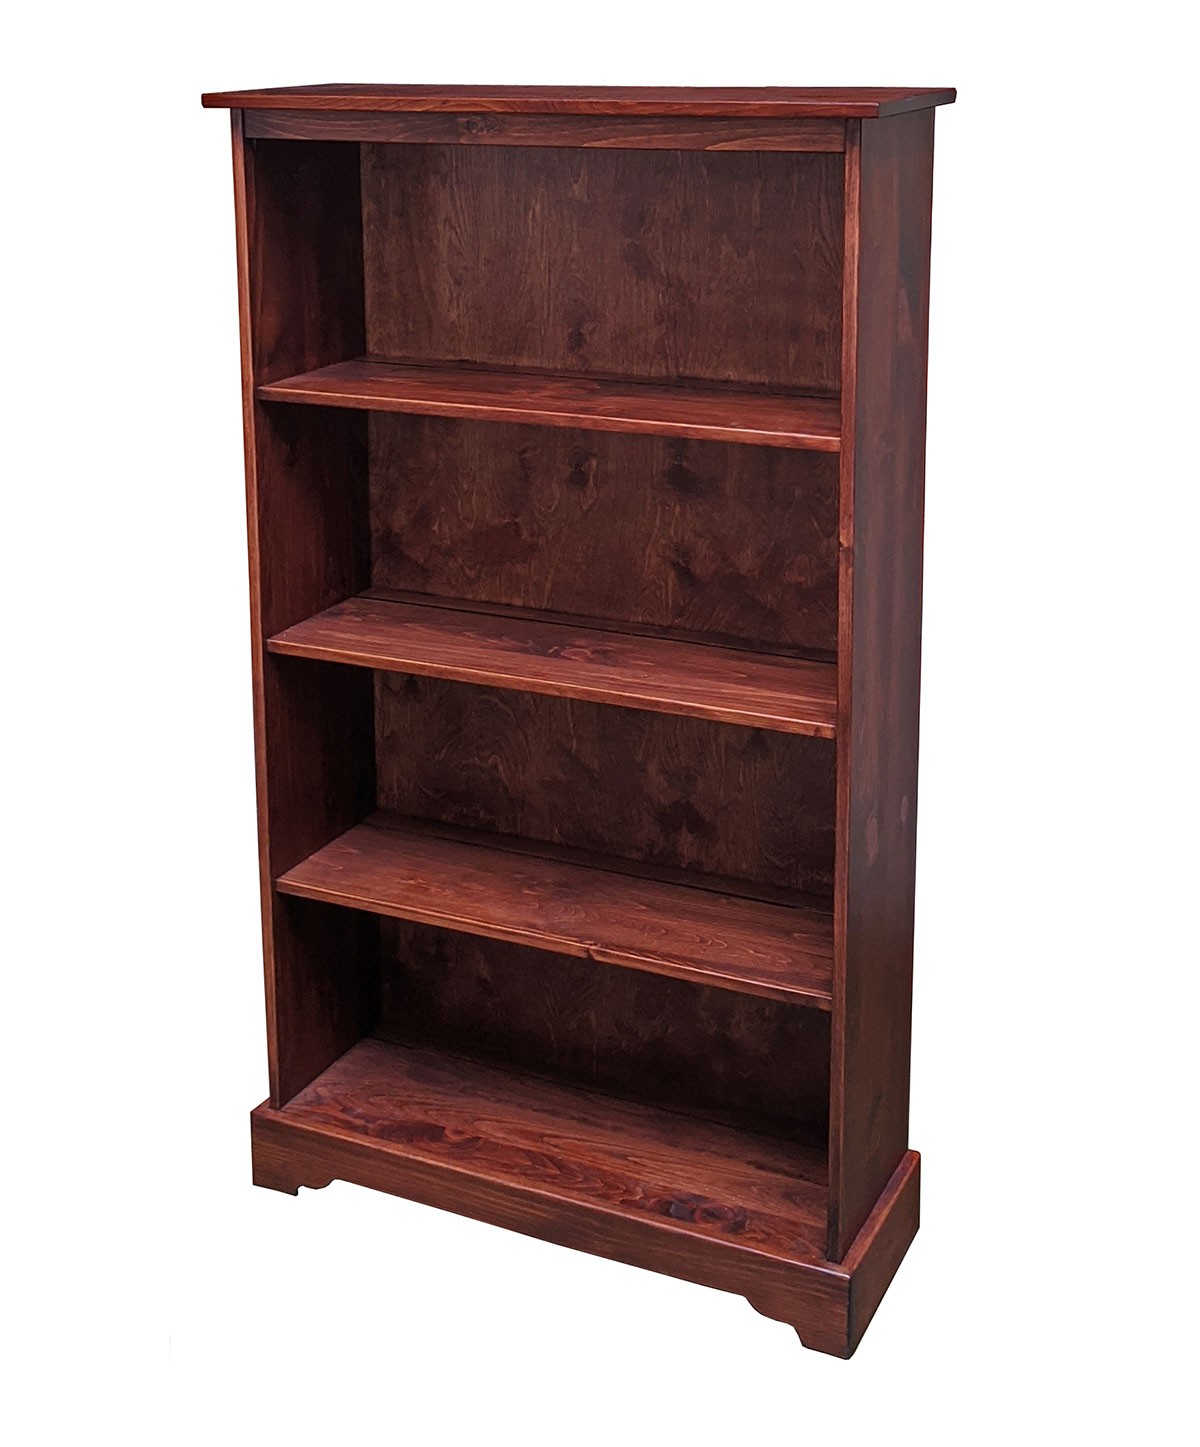 Pine Alder Furniture Fenton, Unfinished Alder Wood Bookcases